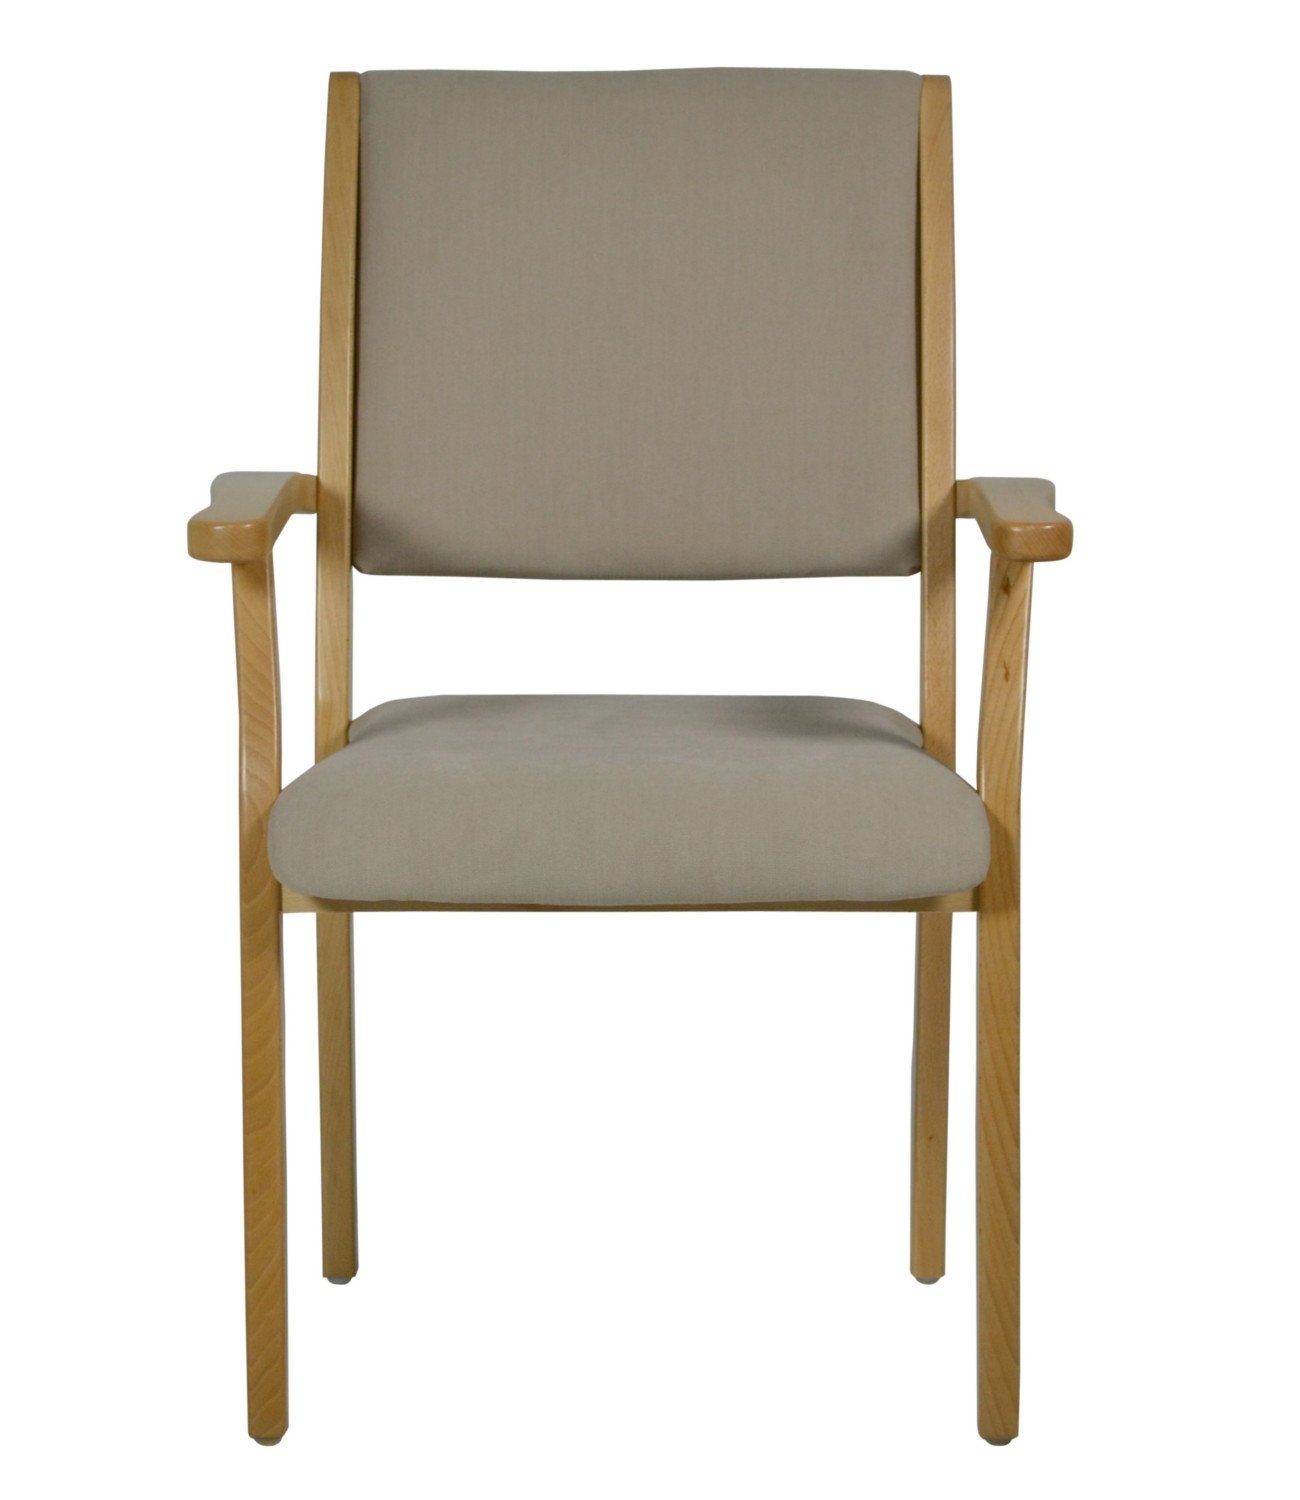 Sitzhöhen Pflegestuhl Verschiedene standfest, Kerry - wählbar, Sand DB14 Seniorenstuhl (Einzel), Bezüge Microfaser wählbar verschieden Sitzhöhe Stuhl Devita stapelbar, versch.